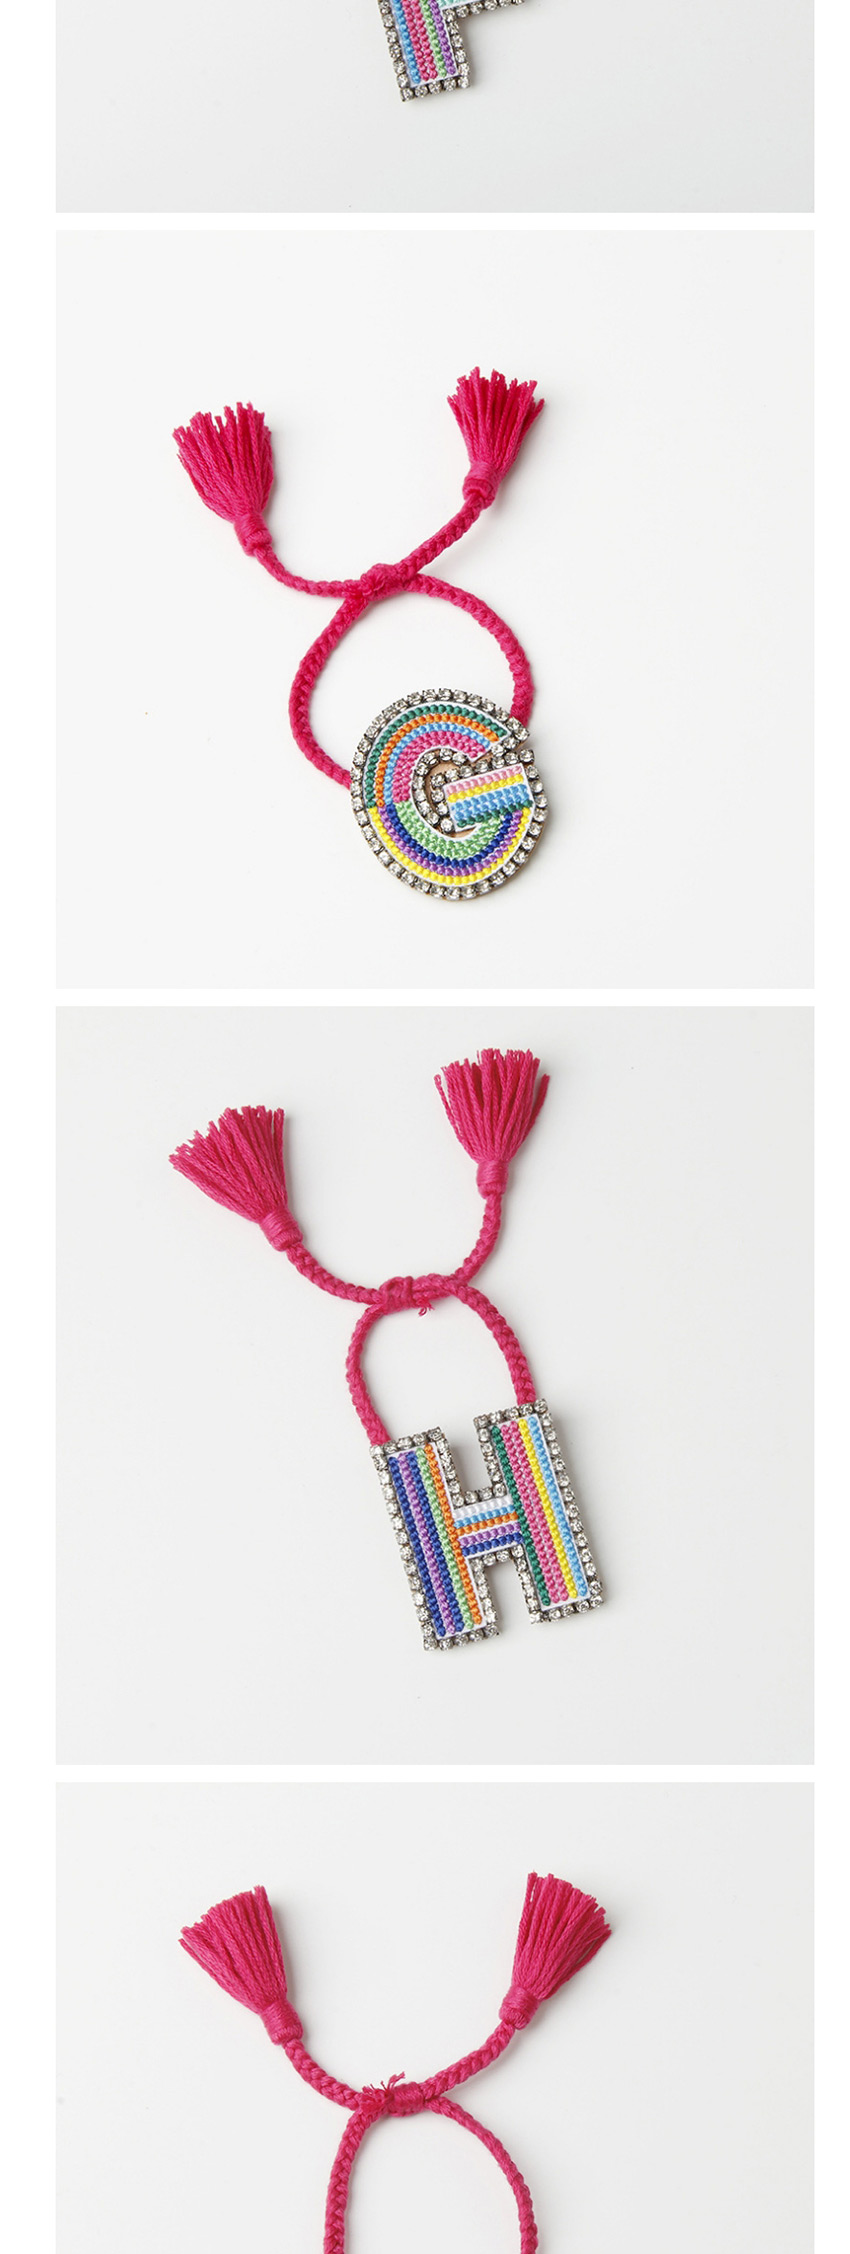 Fashion F Color Embroidered Woven Adjustable Crystal Alphabet Bracelet,Fashion Bracelets